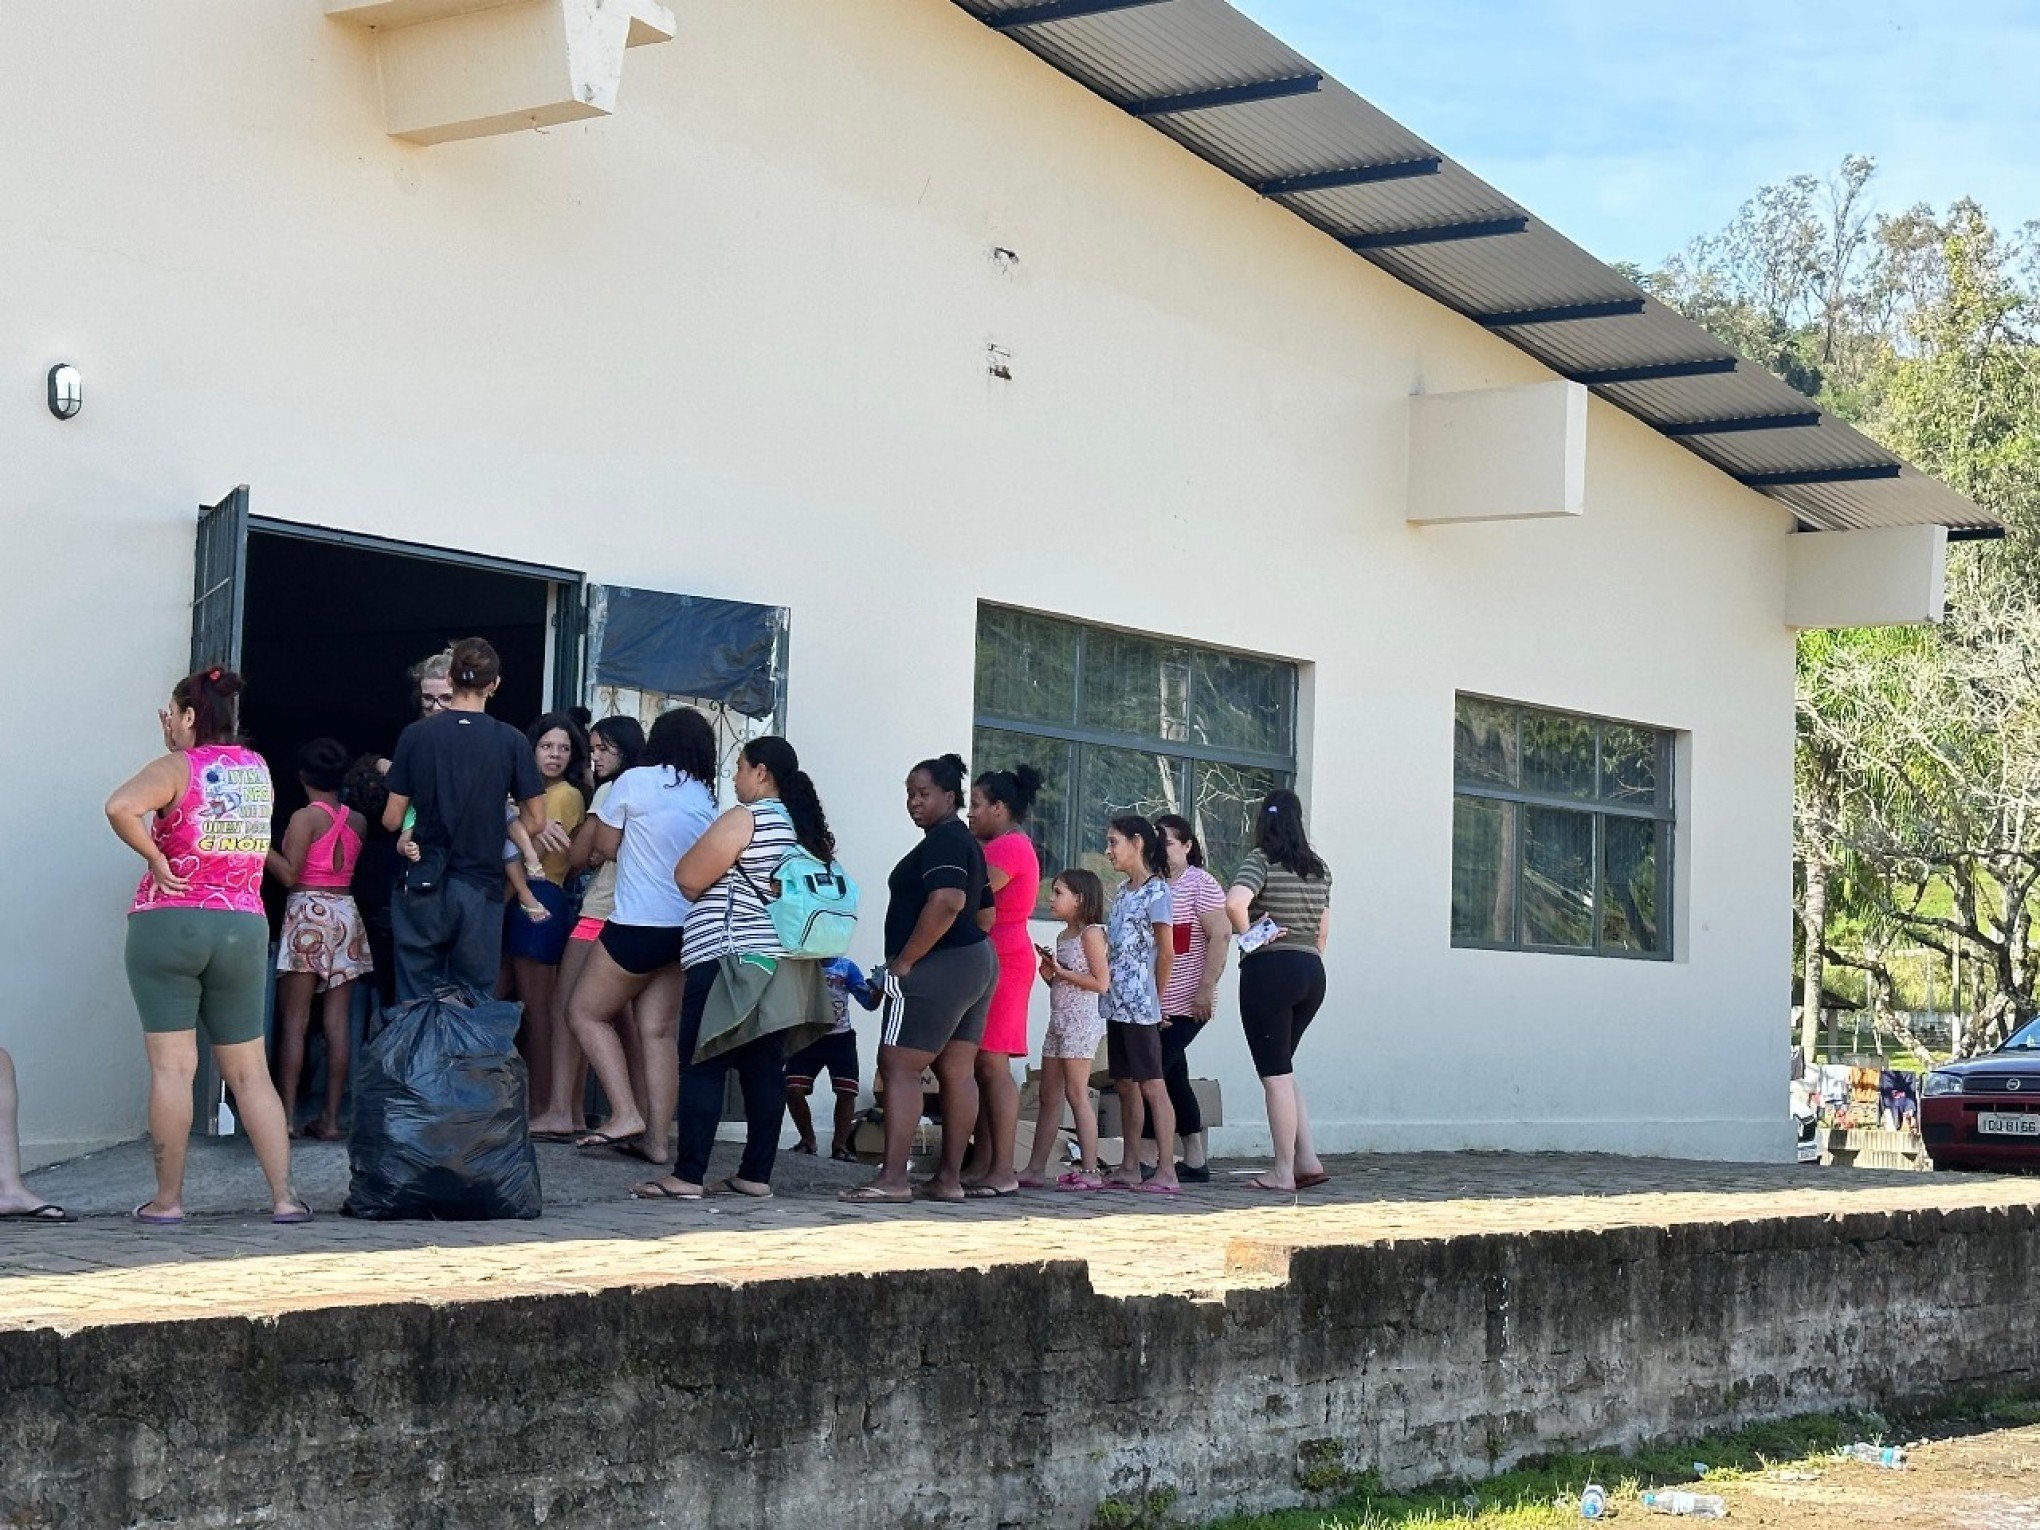 CATÁSTROFE RS: Vans são disponibilizadas para famílias retornarem às casas em São Sebastião do Caí